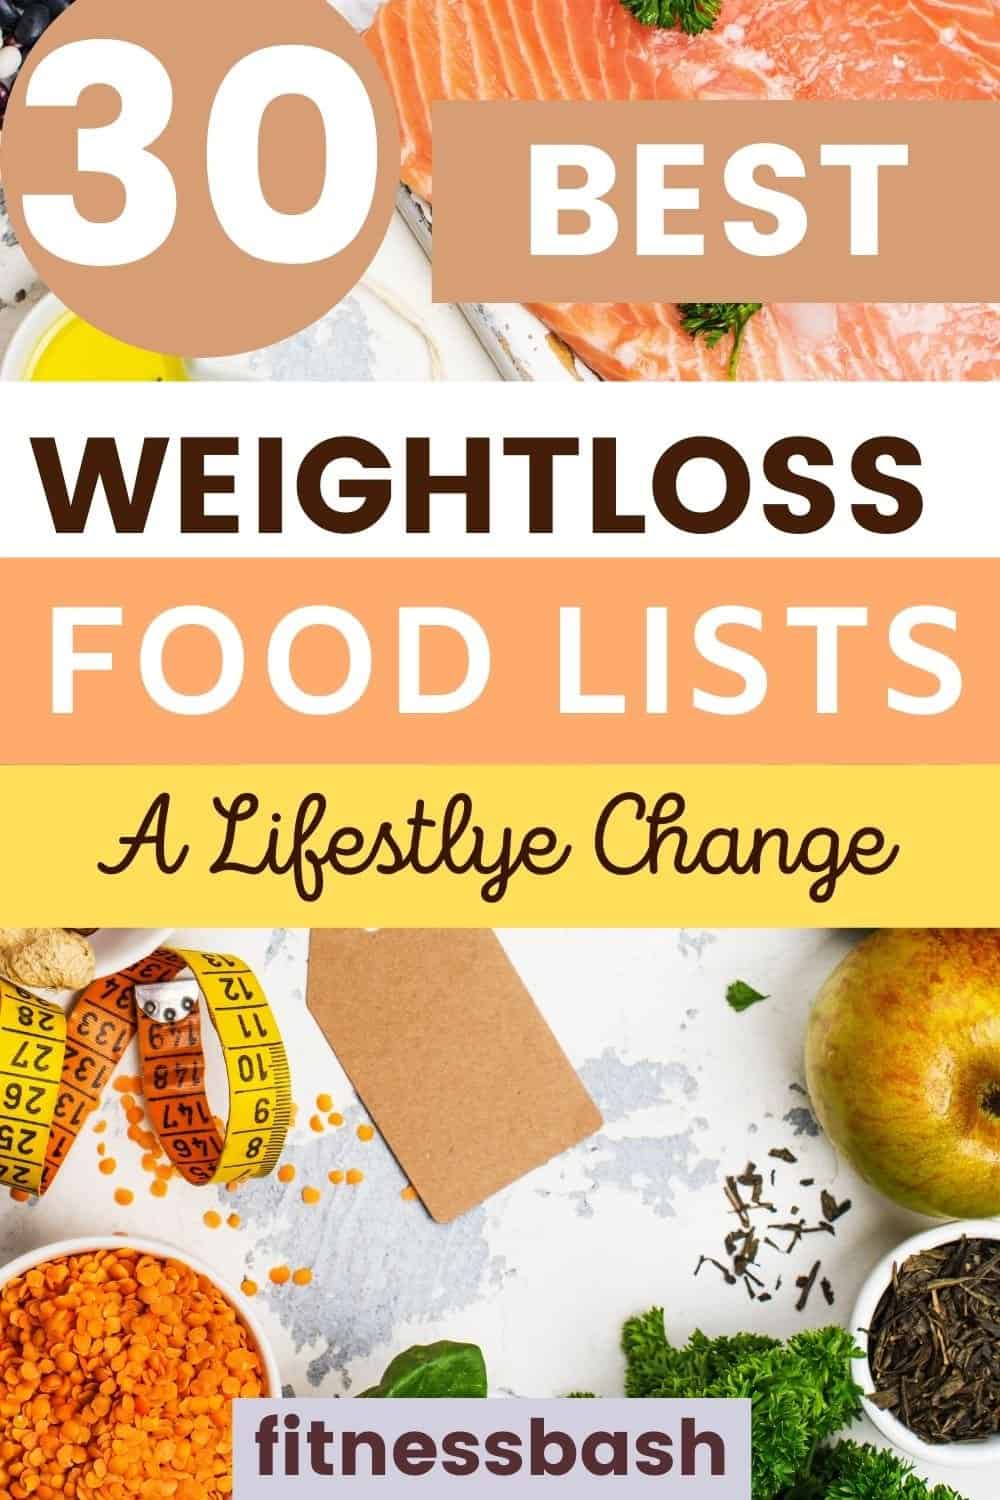 weightloss foods list